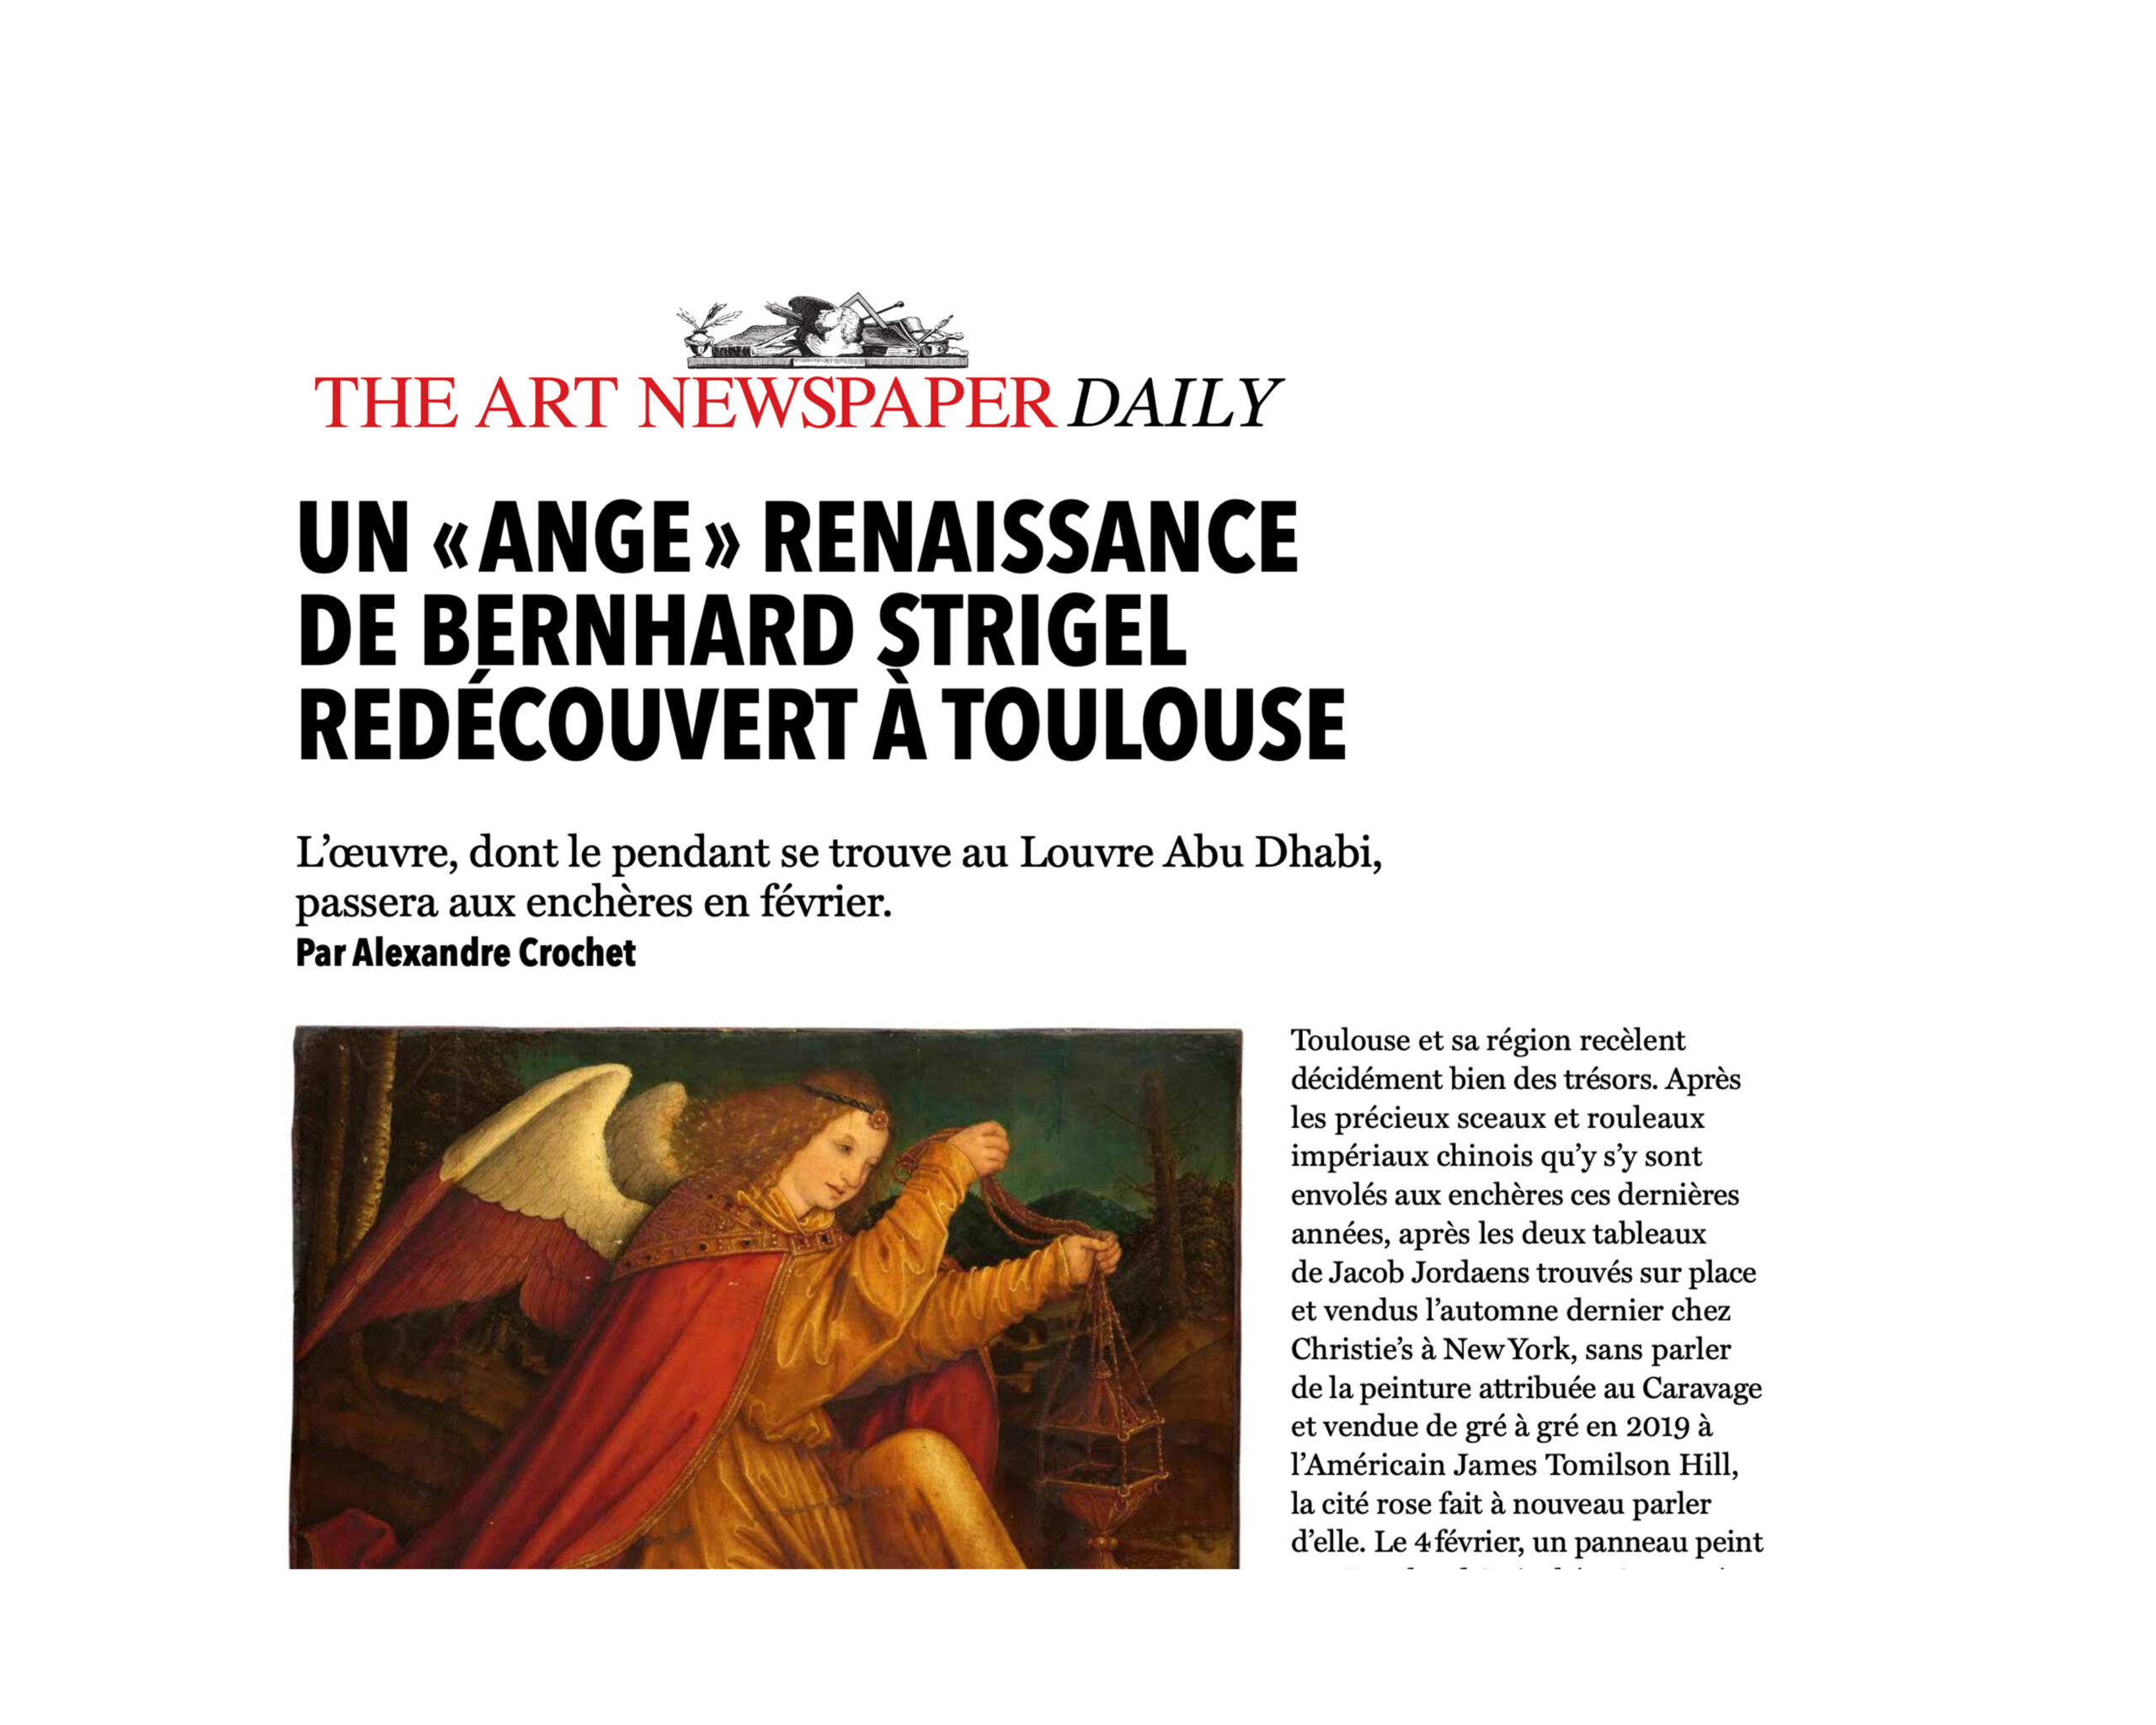 « Un « Ange » Renaissance de Bernhard Strigel redécouvert à Toulouse », 10 janvier 2022